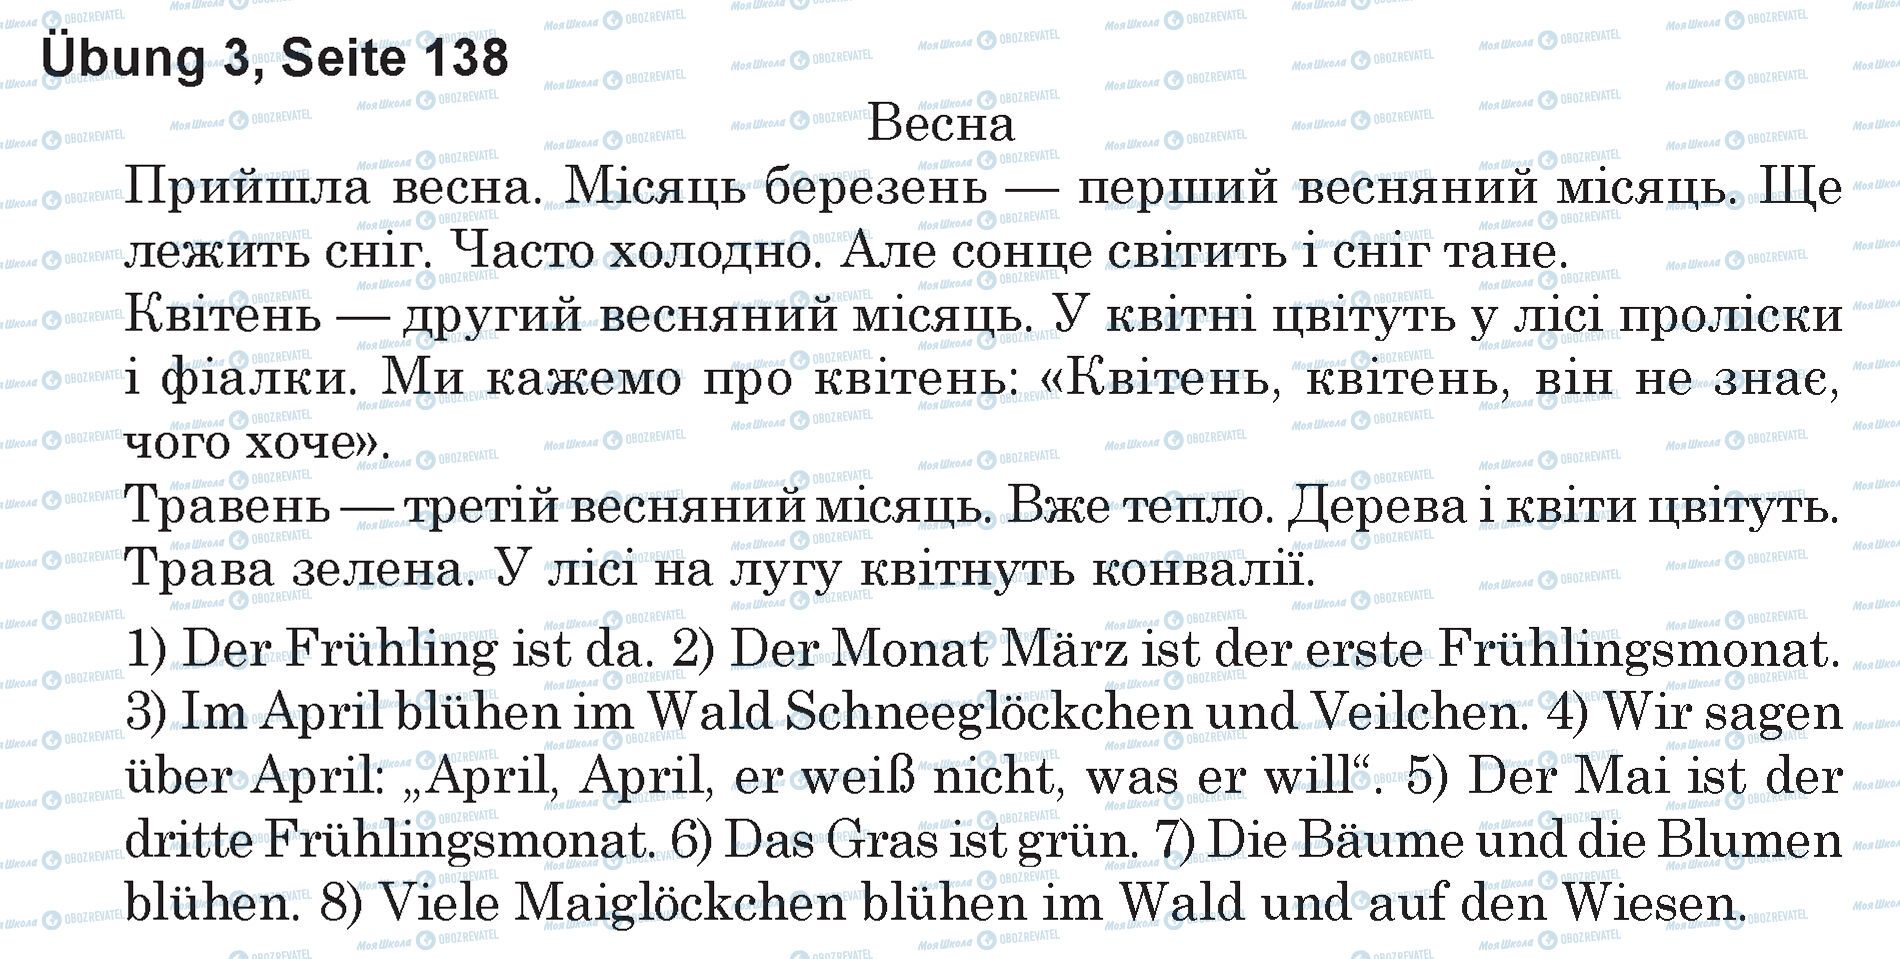 ГДЗ Німецька мова 5 клас сторінка Ubung 3, Seite 138